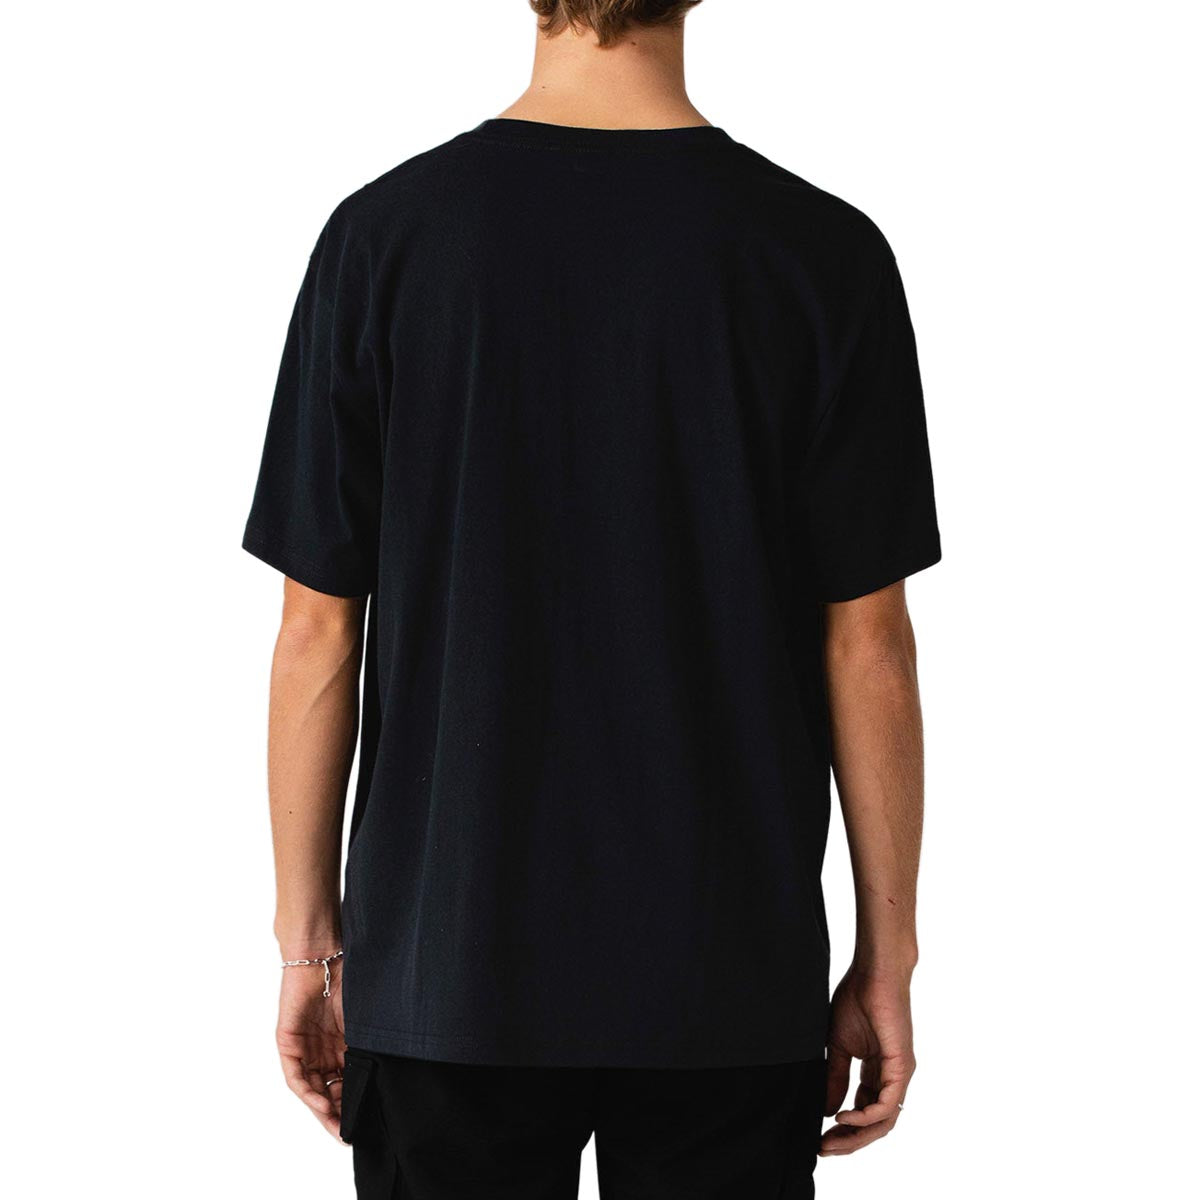 Former Grovel T-Shirt - Black image 4